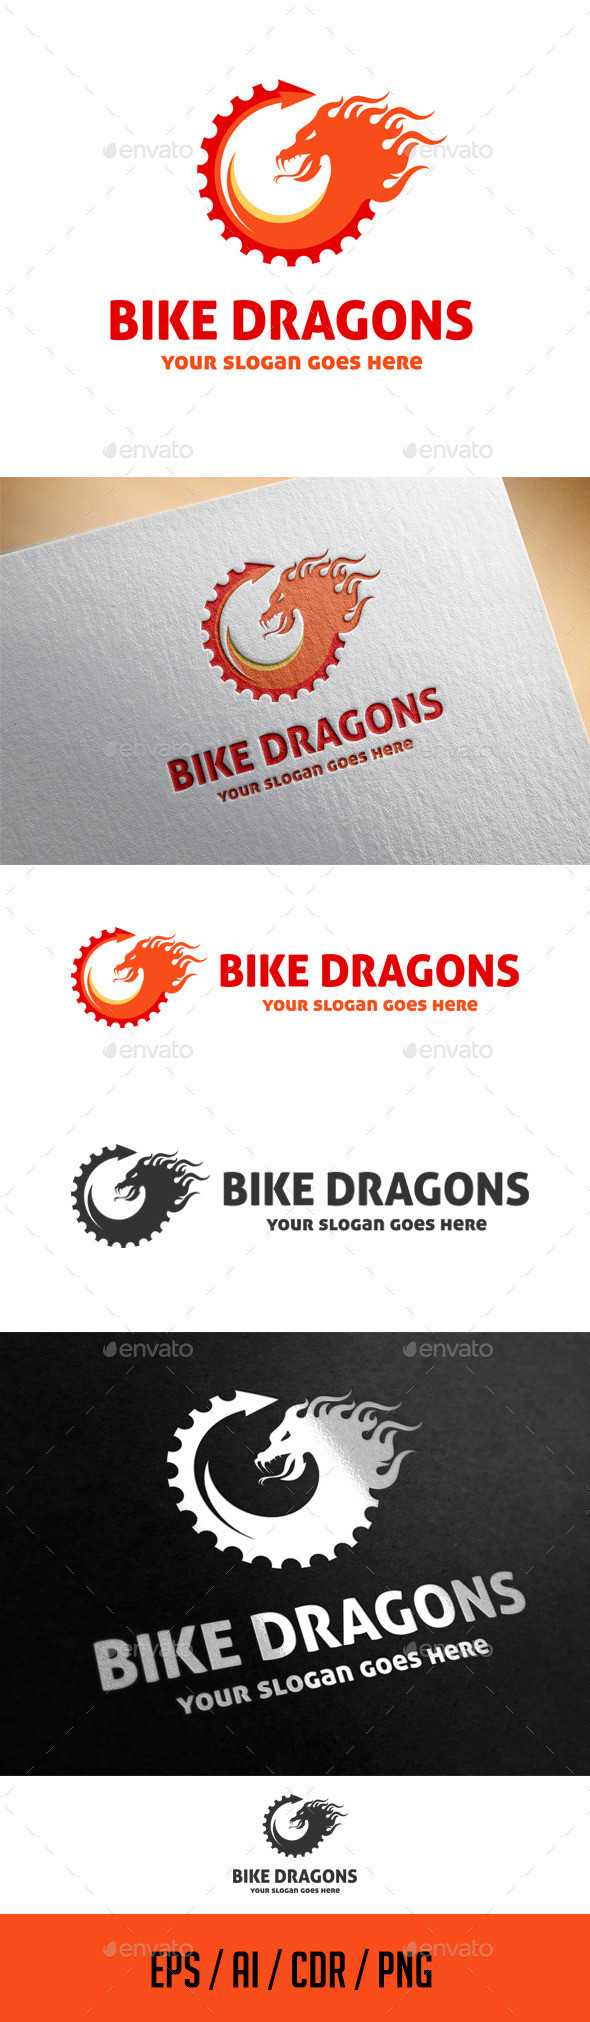 Bike dragons logo preview